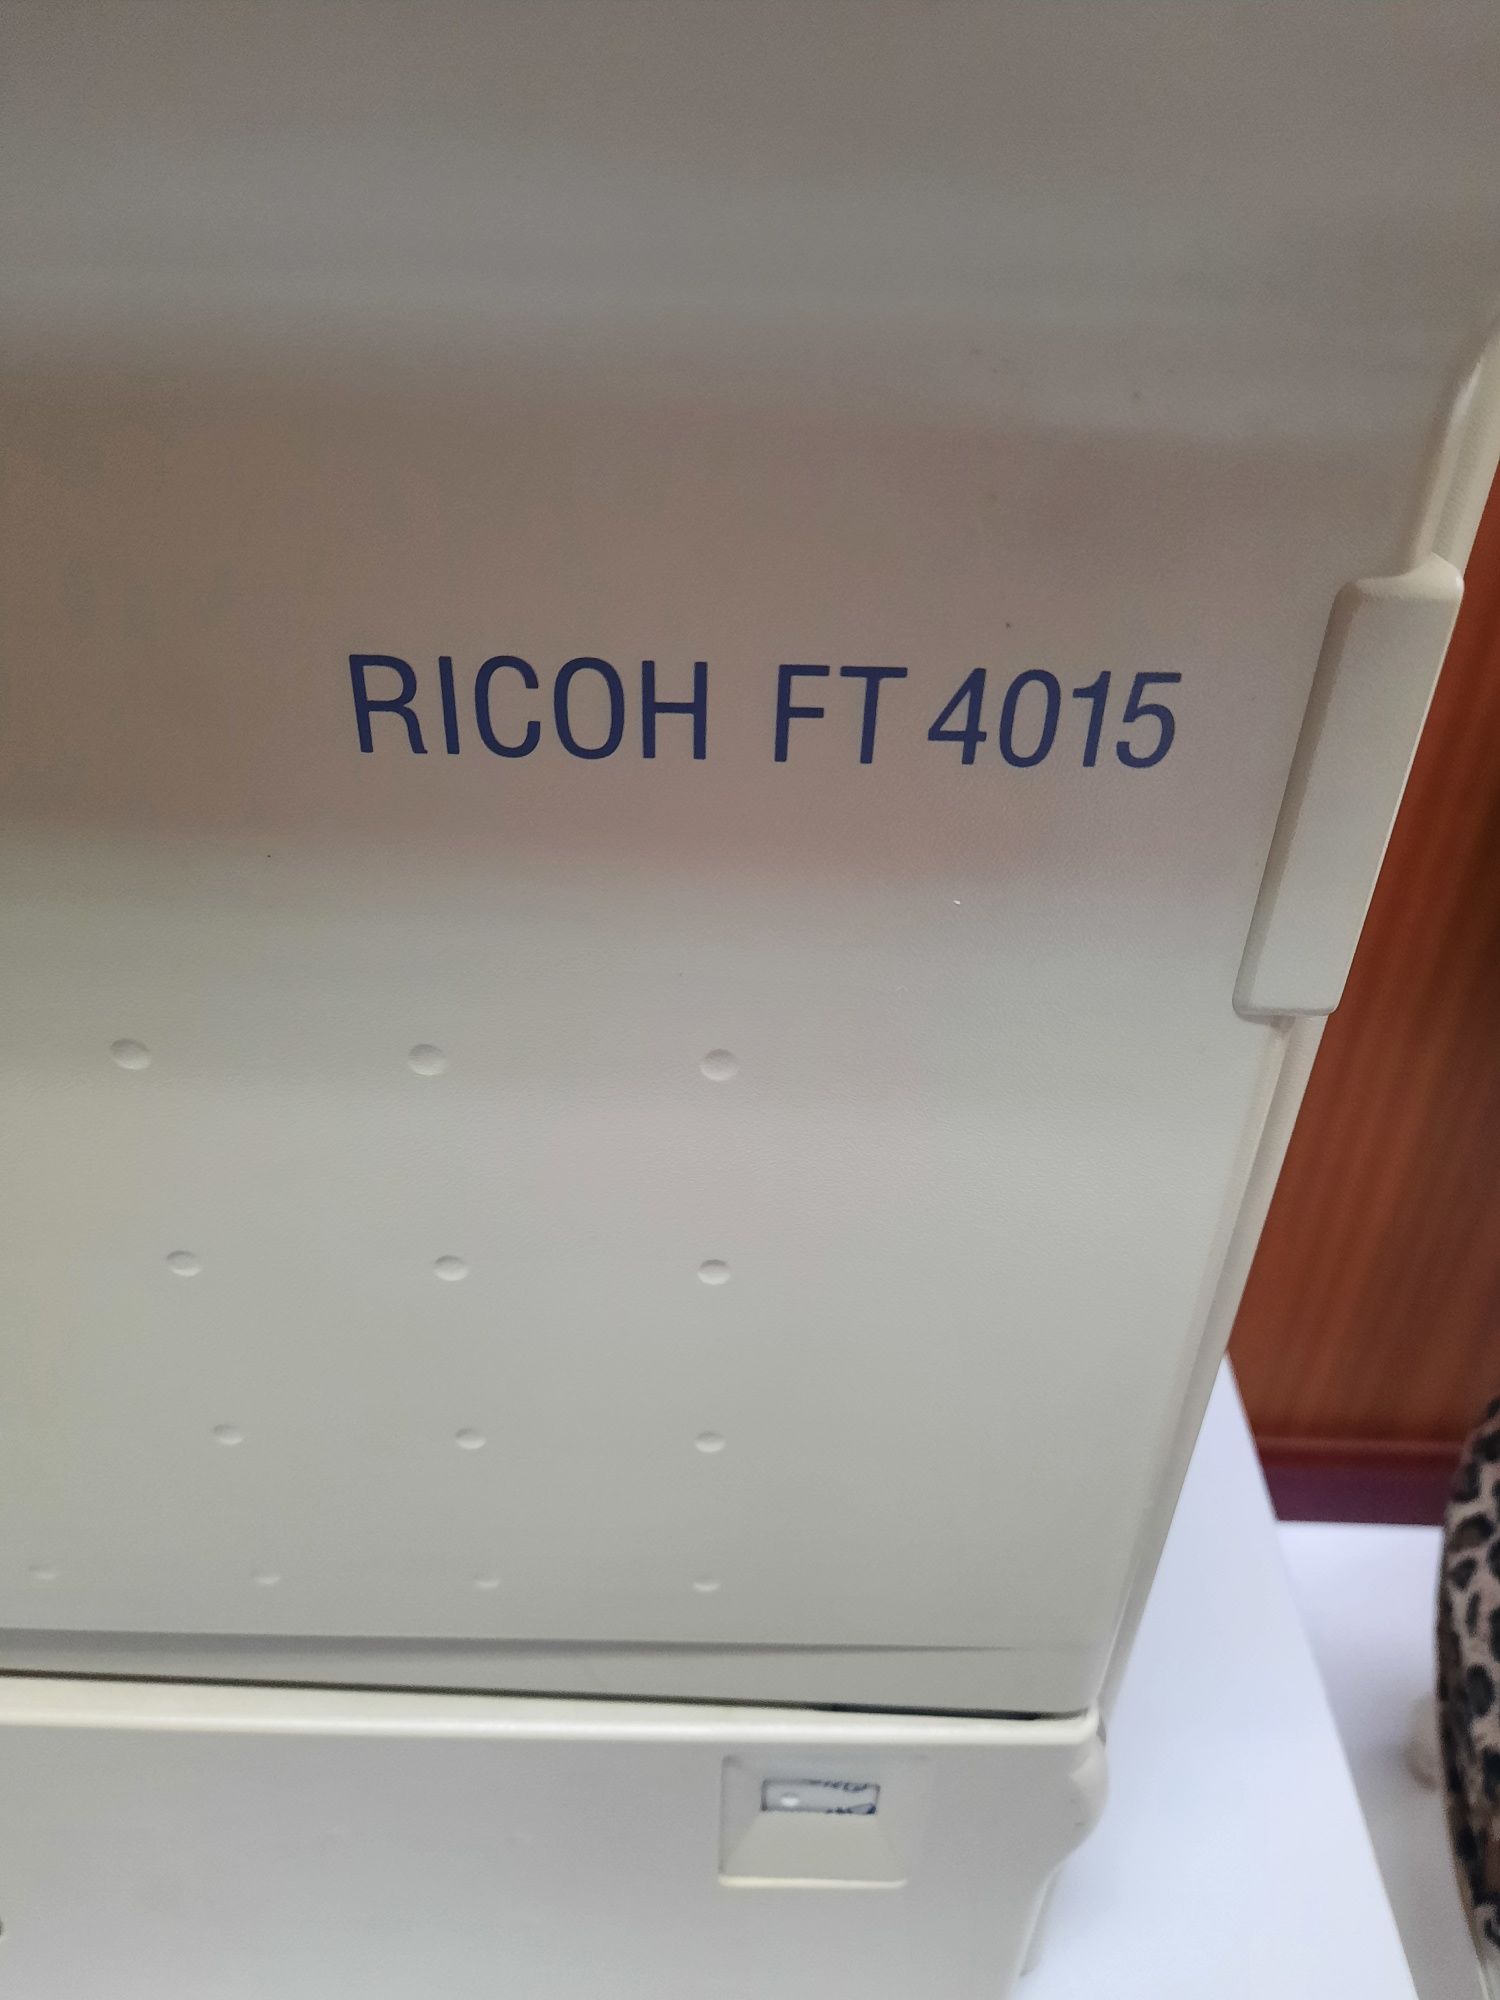 Impressora fotocopiadora Ricoh FT 4015